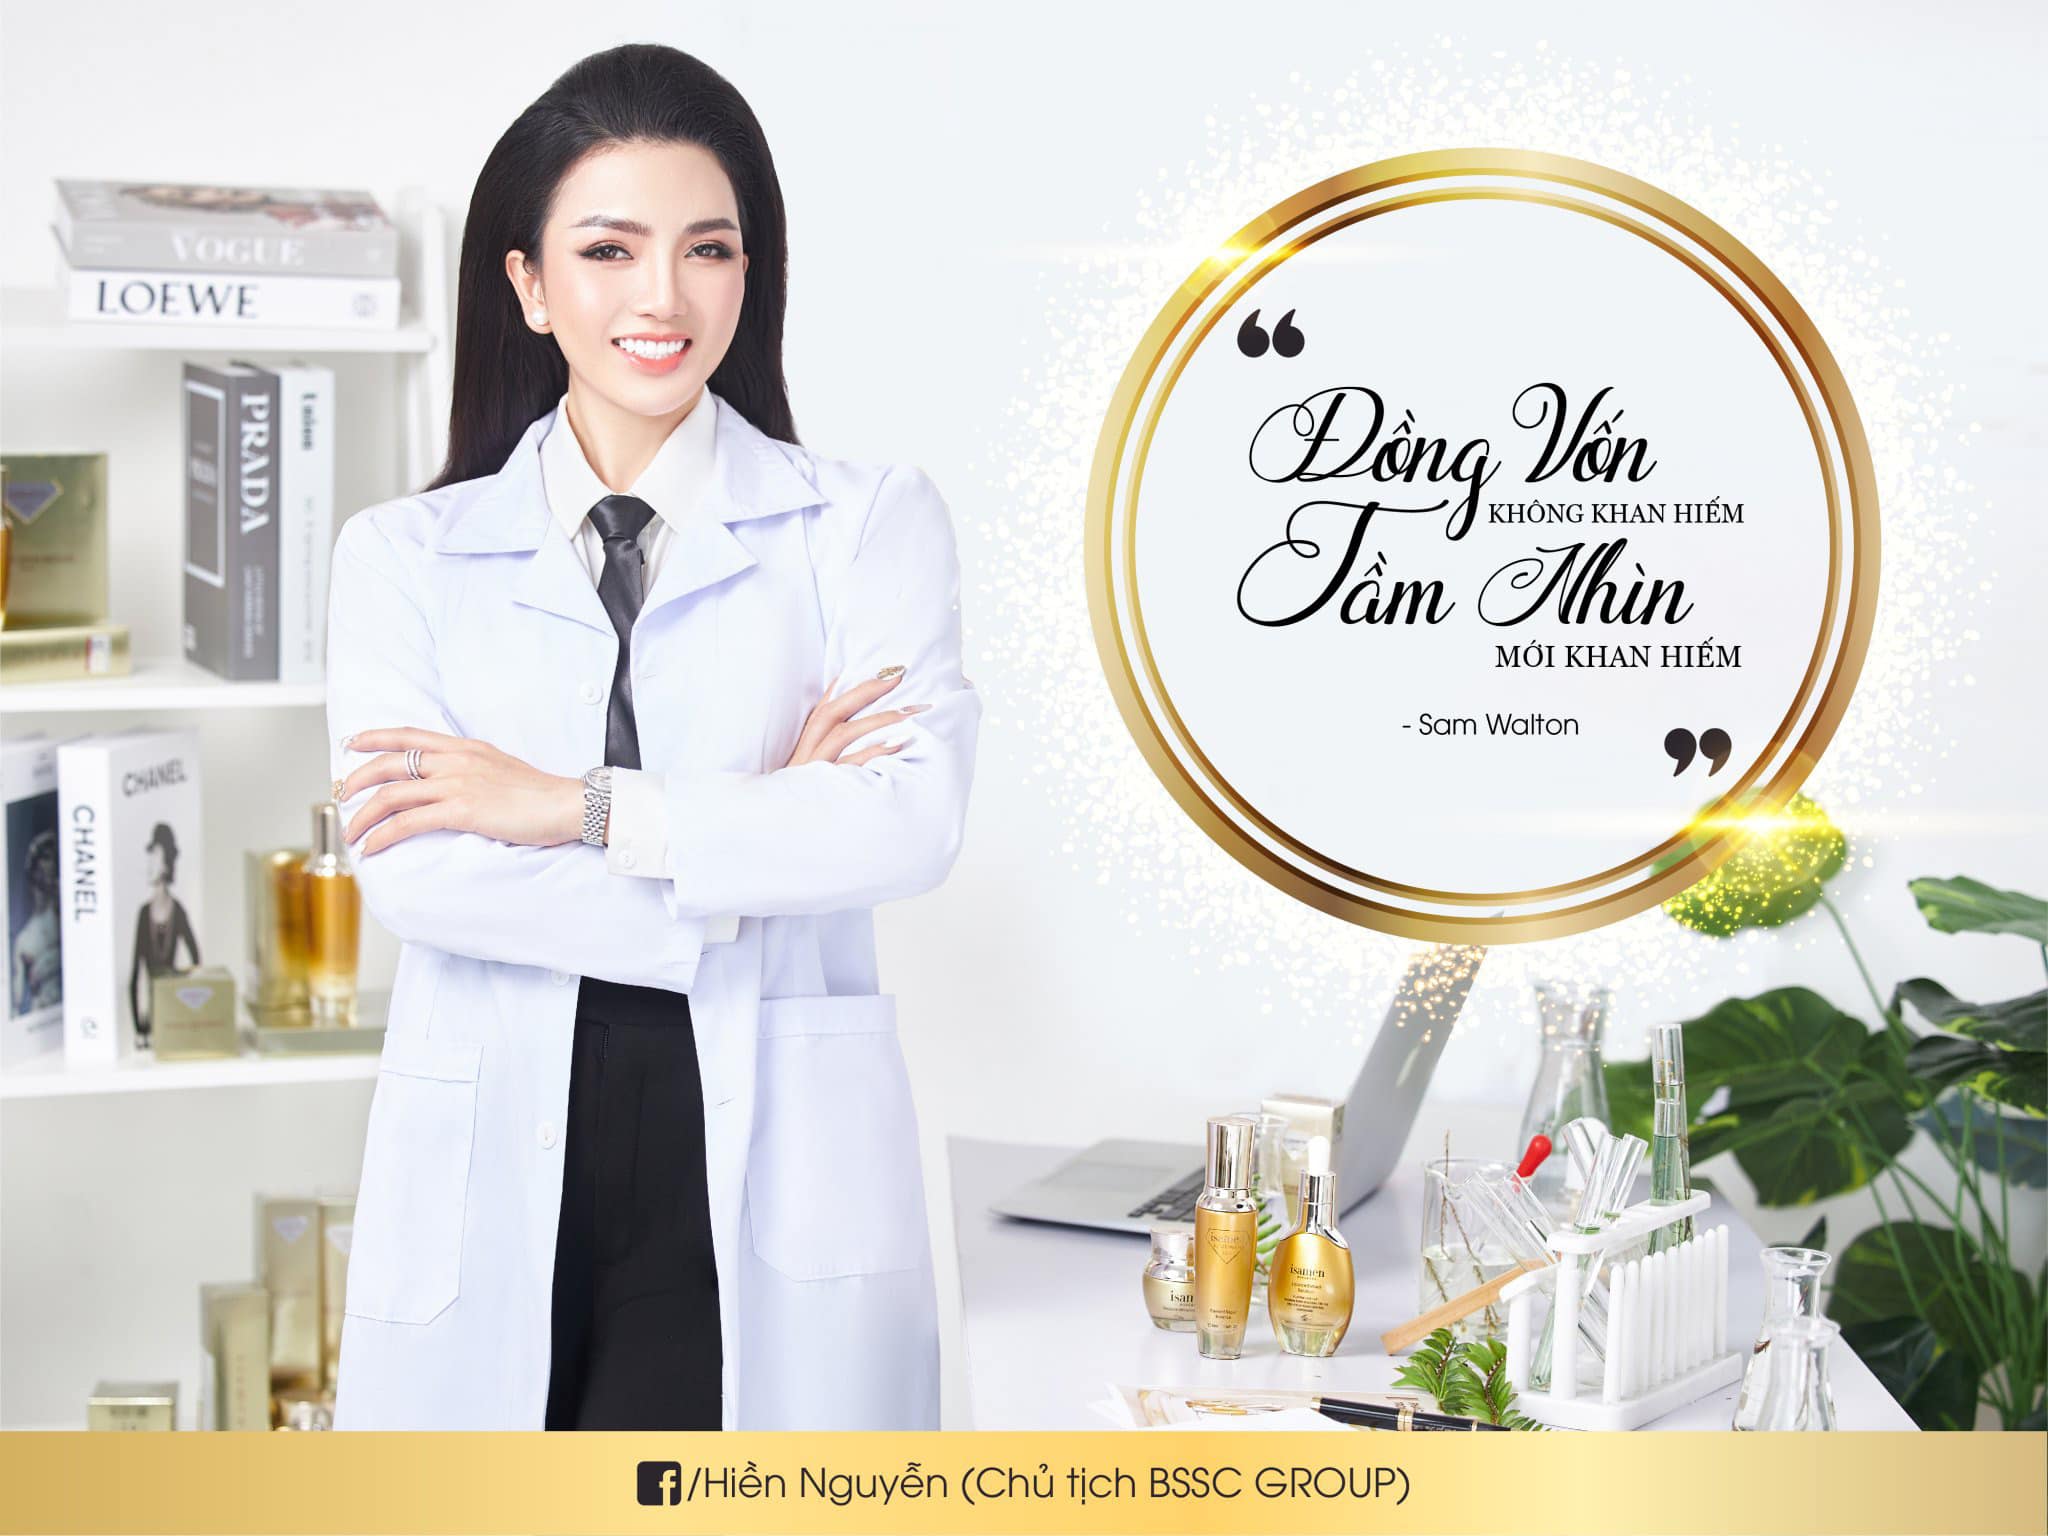 CEO Hiền Nguyễn - chủ tịch JENA - iSAMEN là một nữ 8x tiên phong làm đẹp và tự chủ tài chính giúp cho hàng nghìn người có cuộc sống tốt hơn